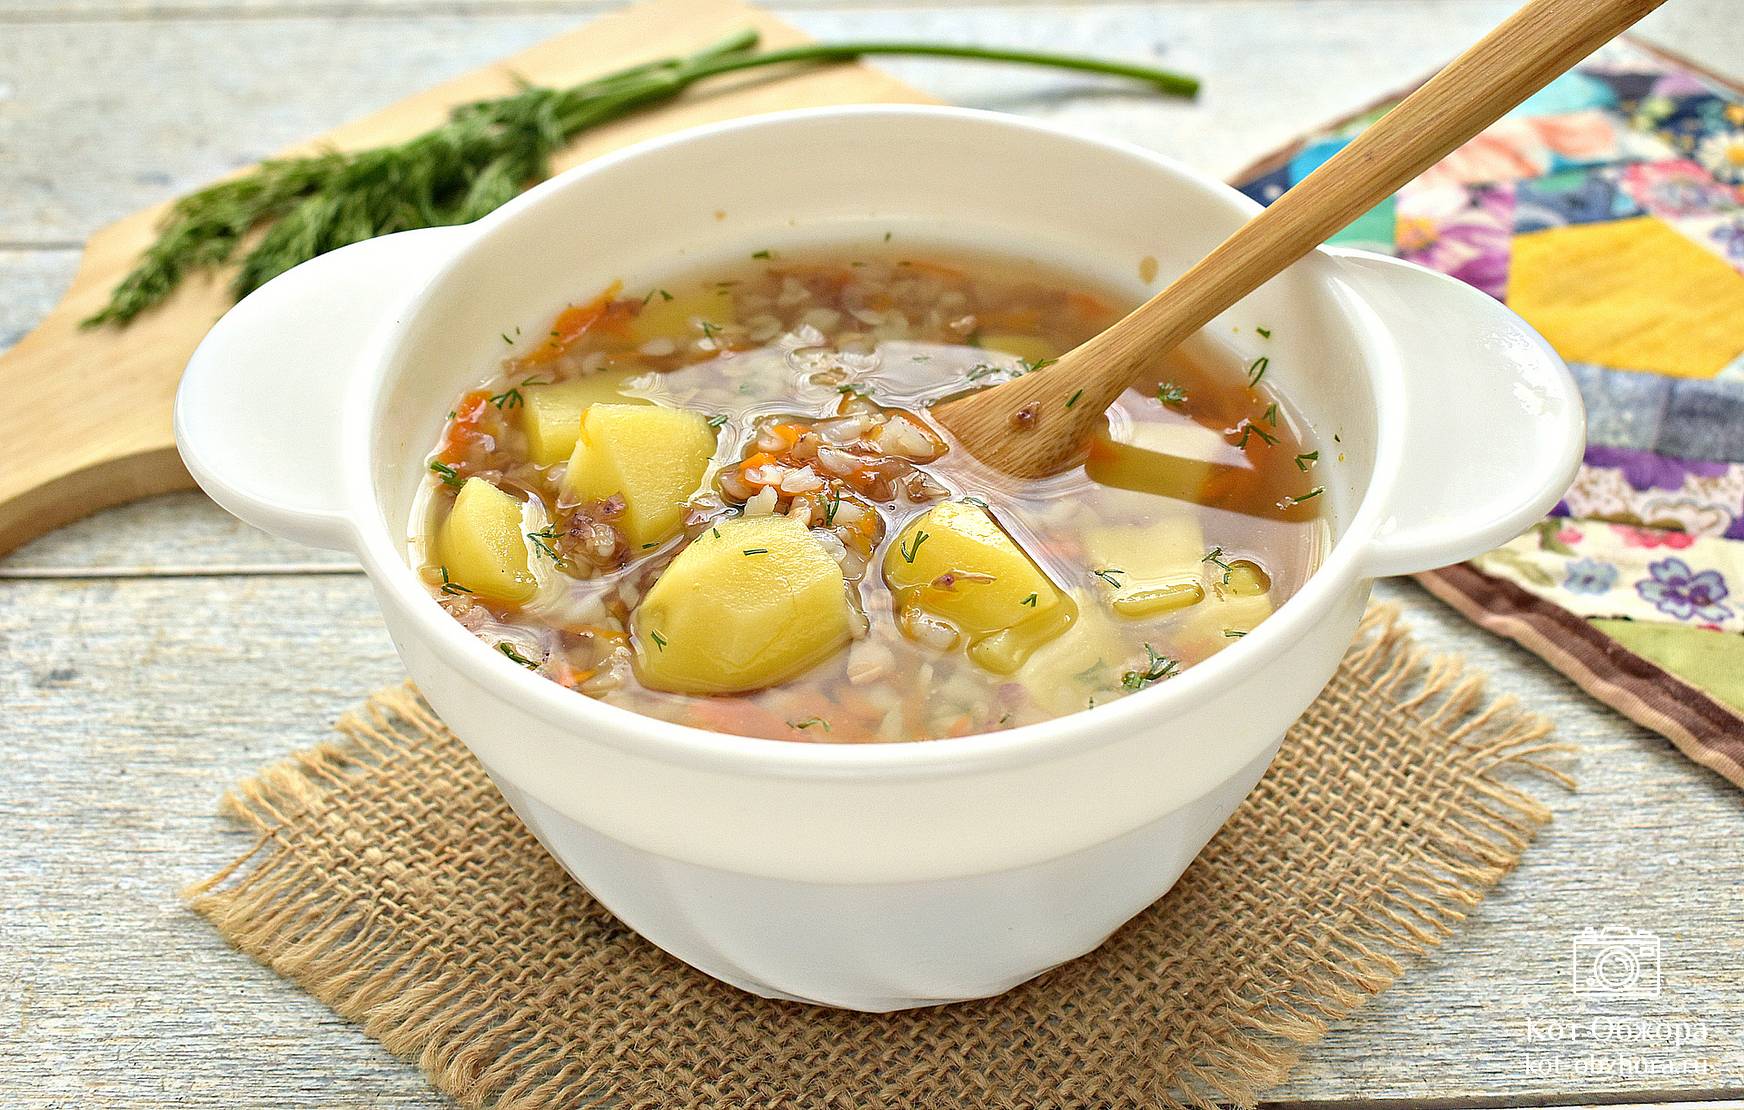 Суп с фрикадельками и картошкой